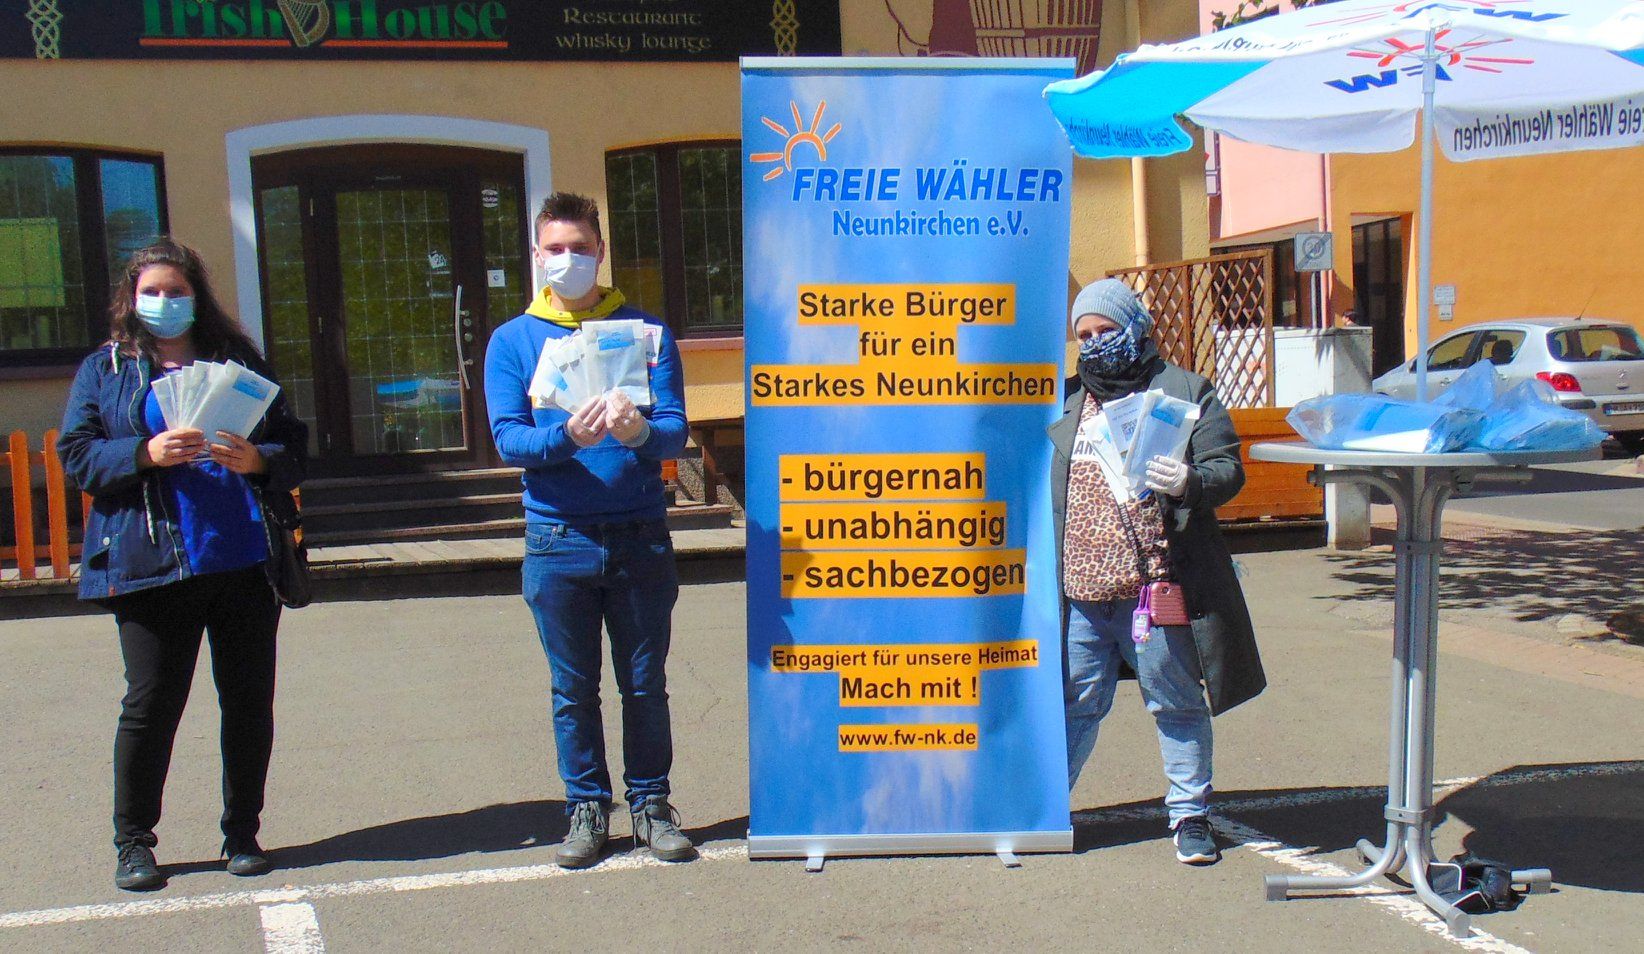  Freie Wähler verteilen kostenlose Masken an Bürger